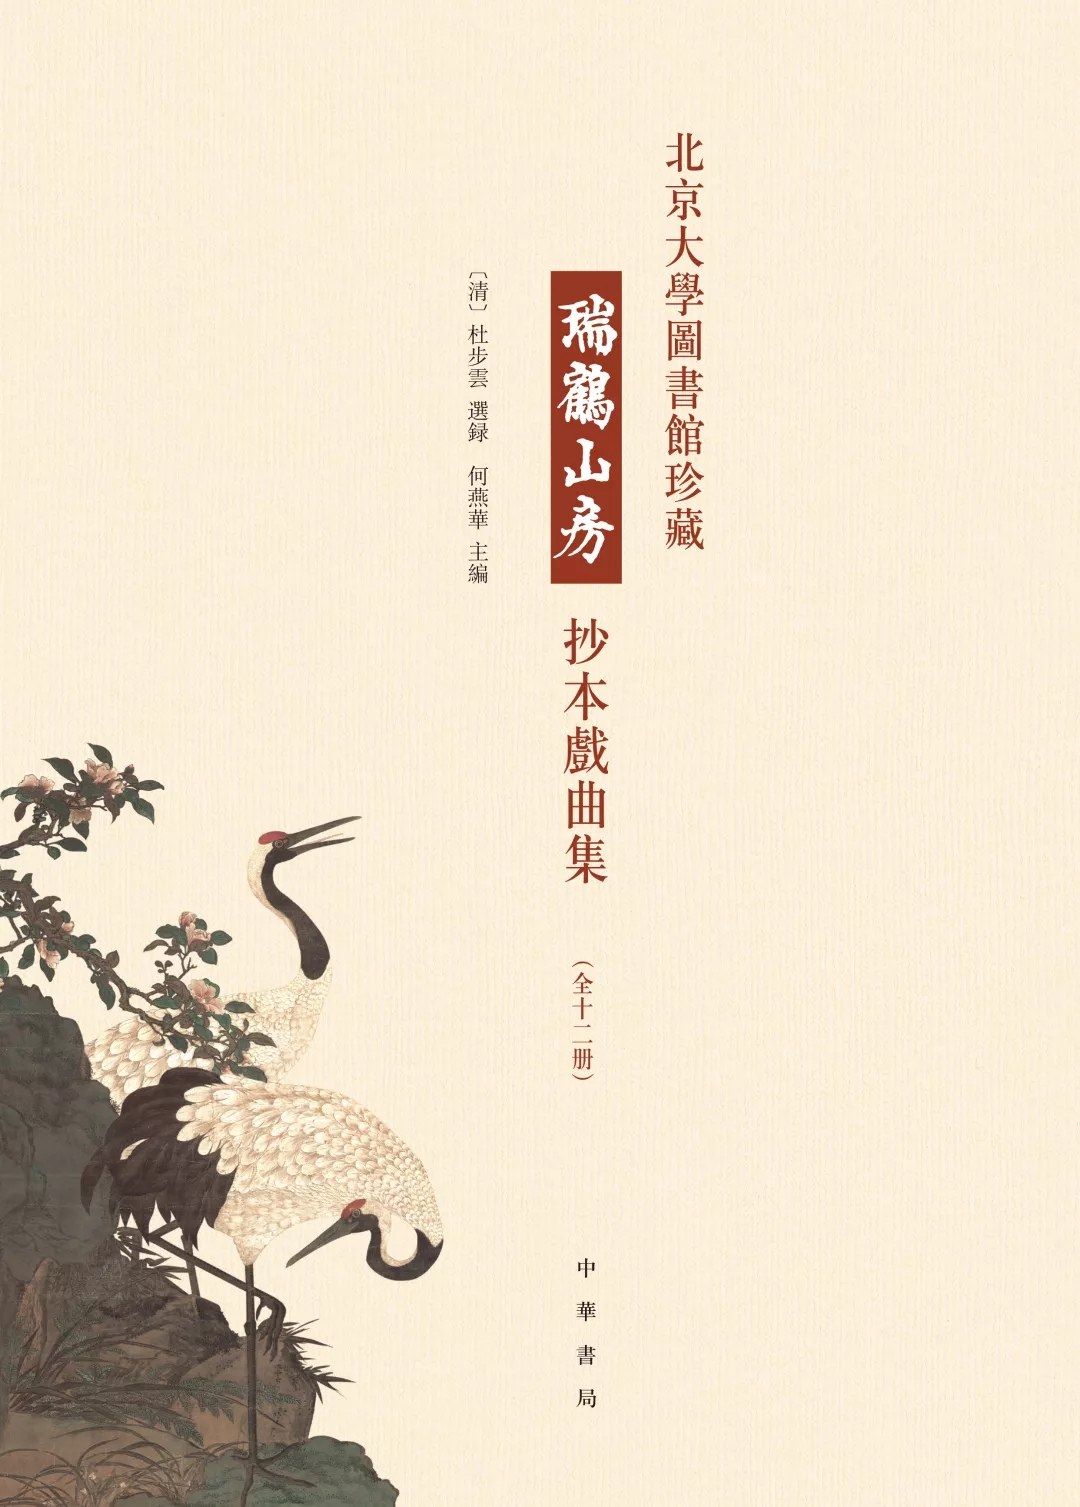 北京大学图书馆珍藏瑞鹤山房抄本戏曲集 第六册